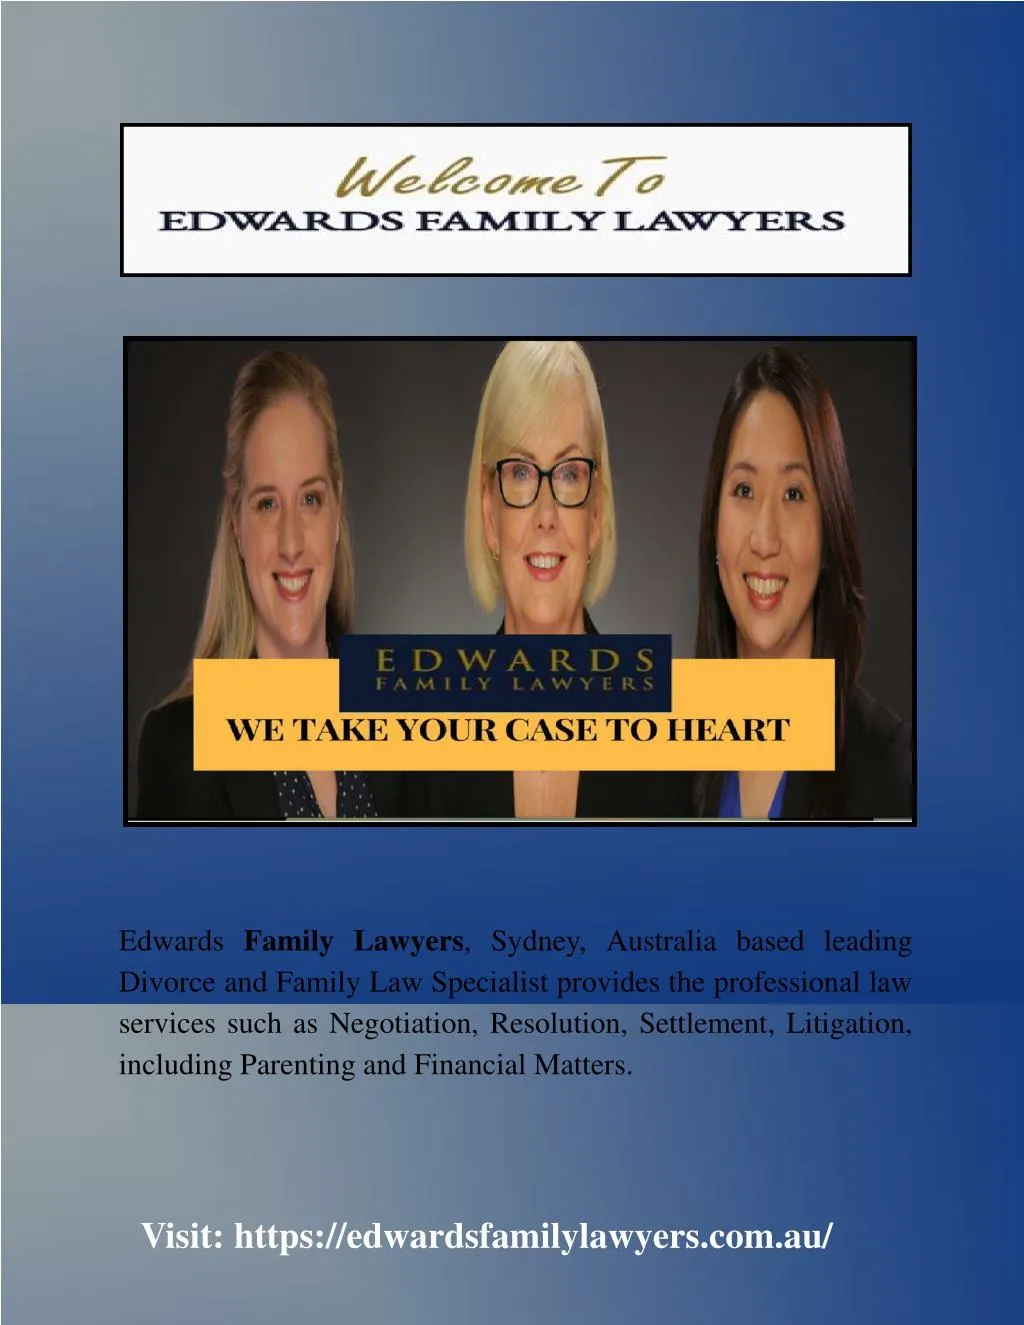 edwards family lawyers sydney australia based